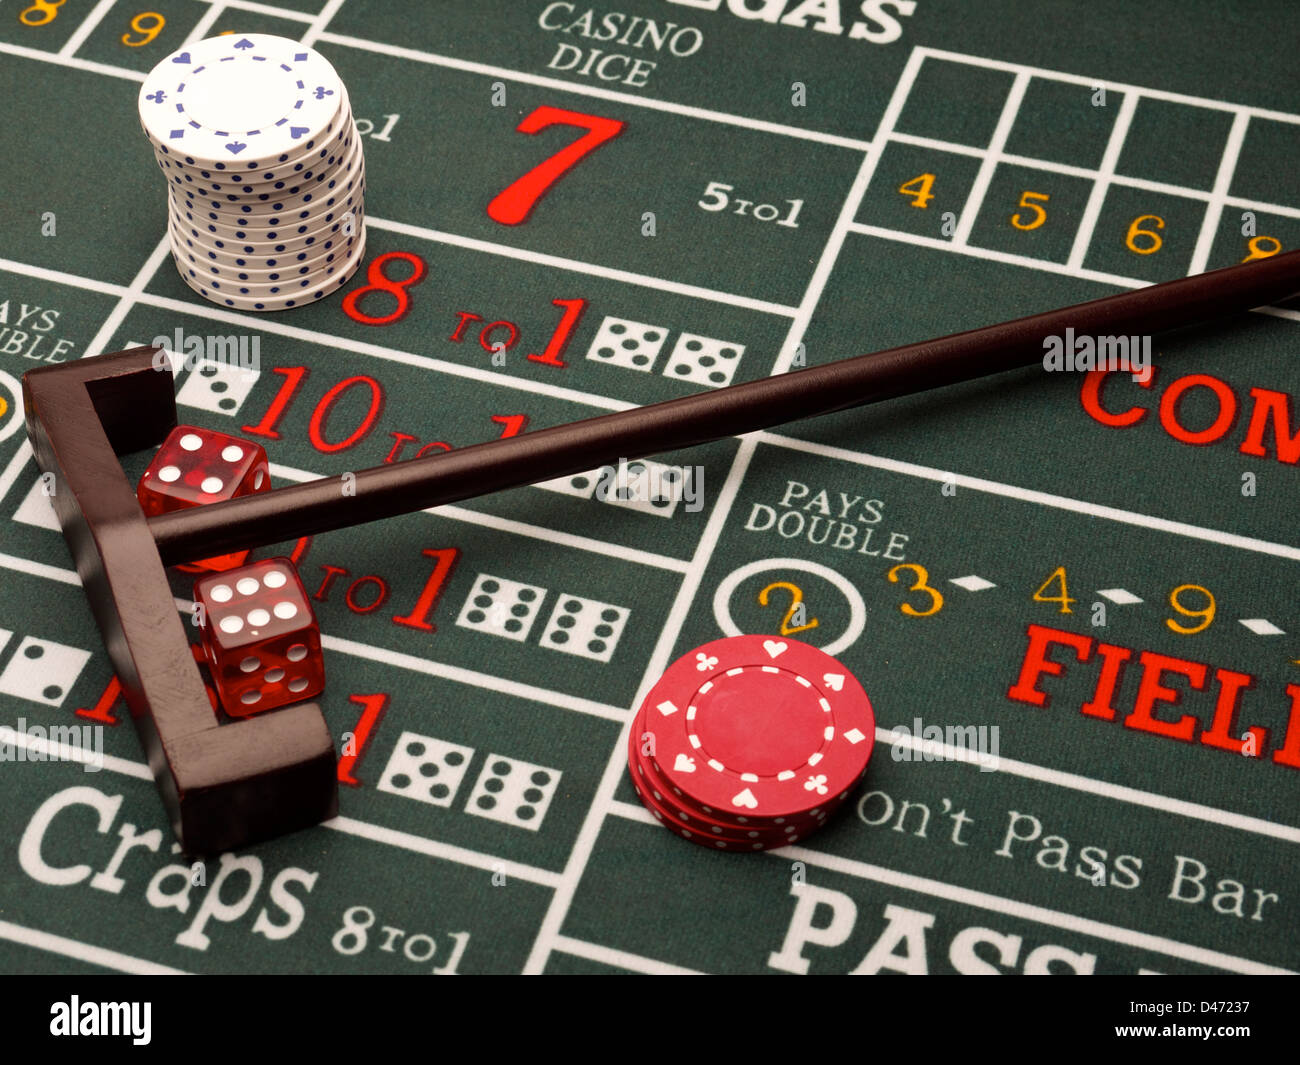 Casino-chips Glücksspiel [Tisch] Würfel Stockfotografie - Alamy